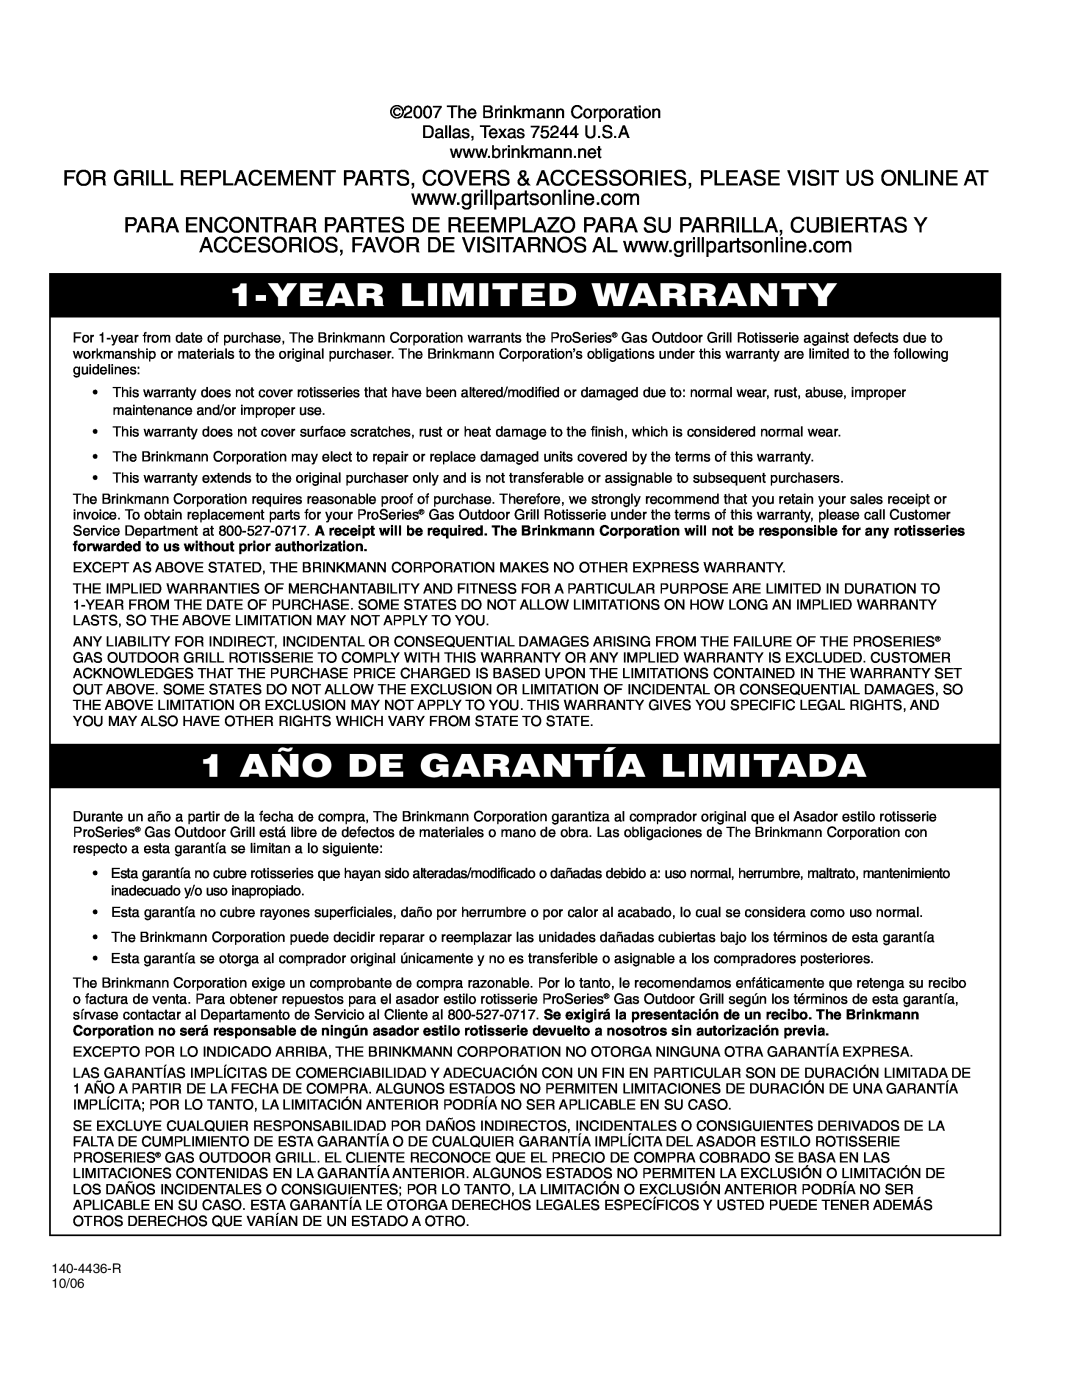 Brinkmann ProSeriesTM owner manual Year Limited Warranty, 1 AÑO DE GARANTÍA LIMITADA 